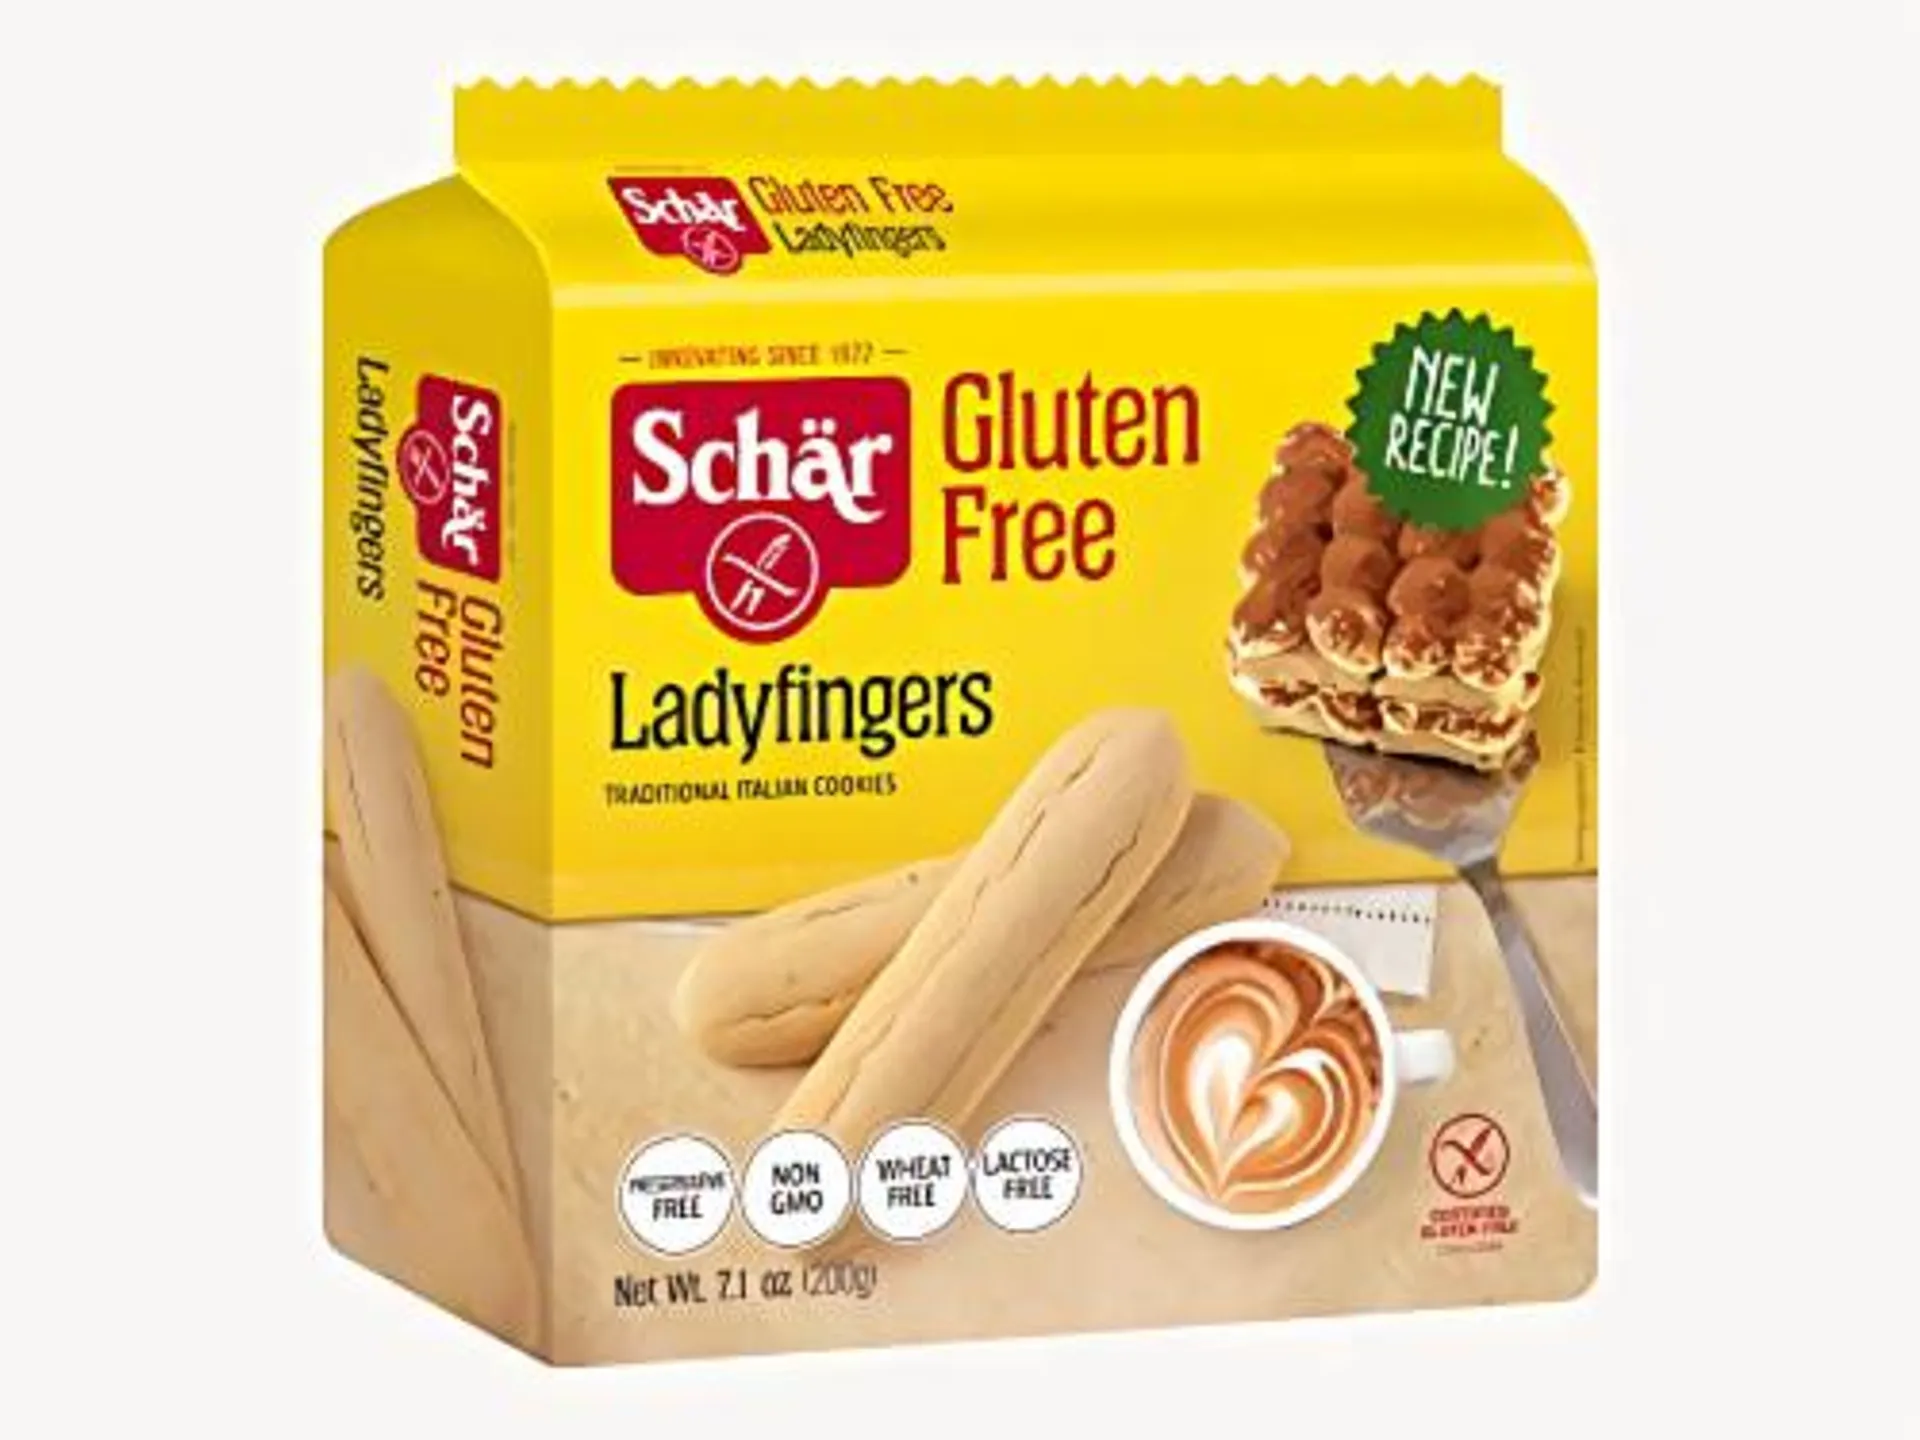 Schar Gluten Free Ladyfingers, 5.3 oz., 4-Pack